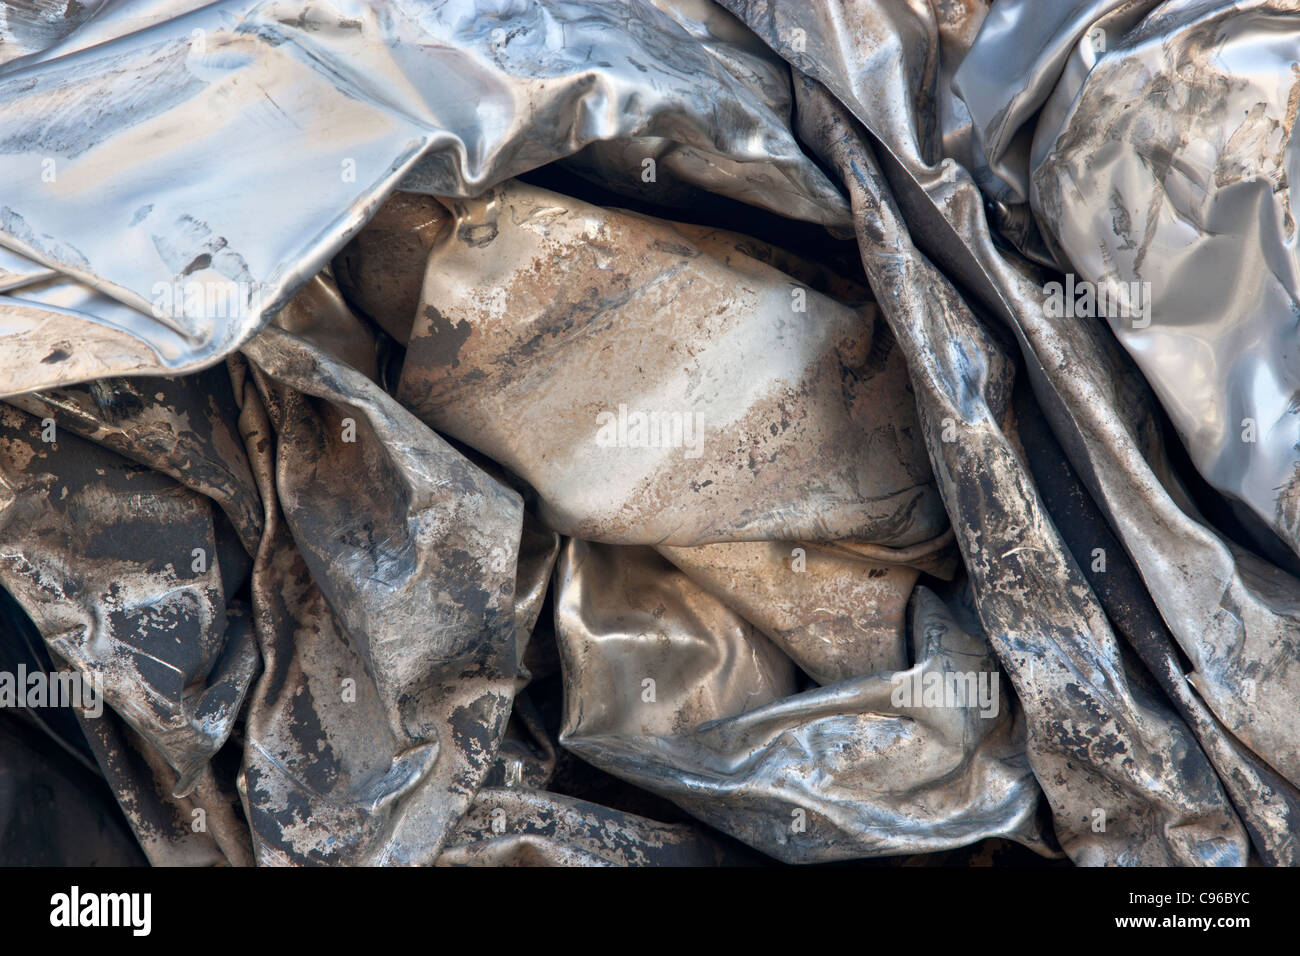 Le recyclage, en acier inoxydable compactés Banque D'Images